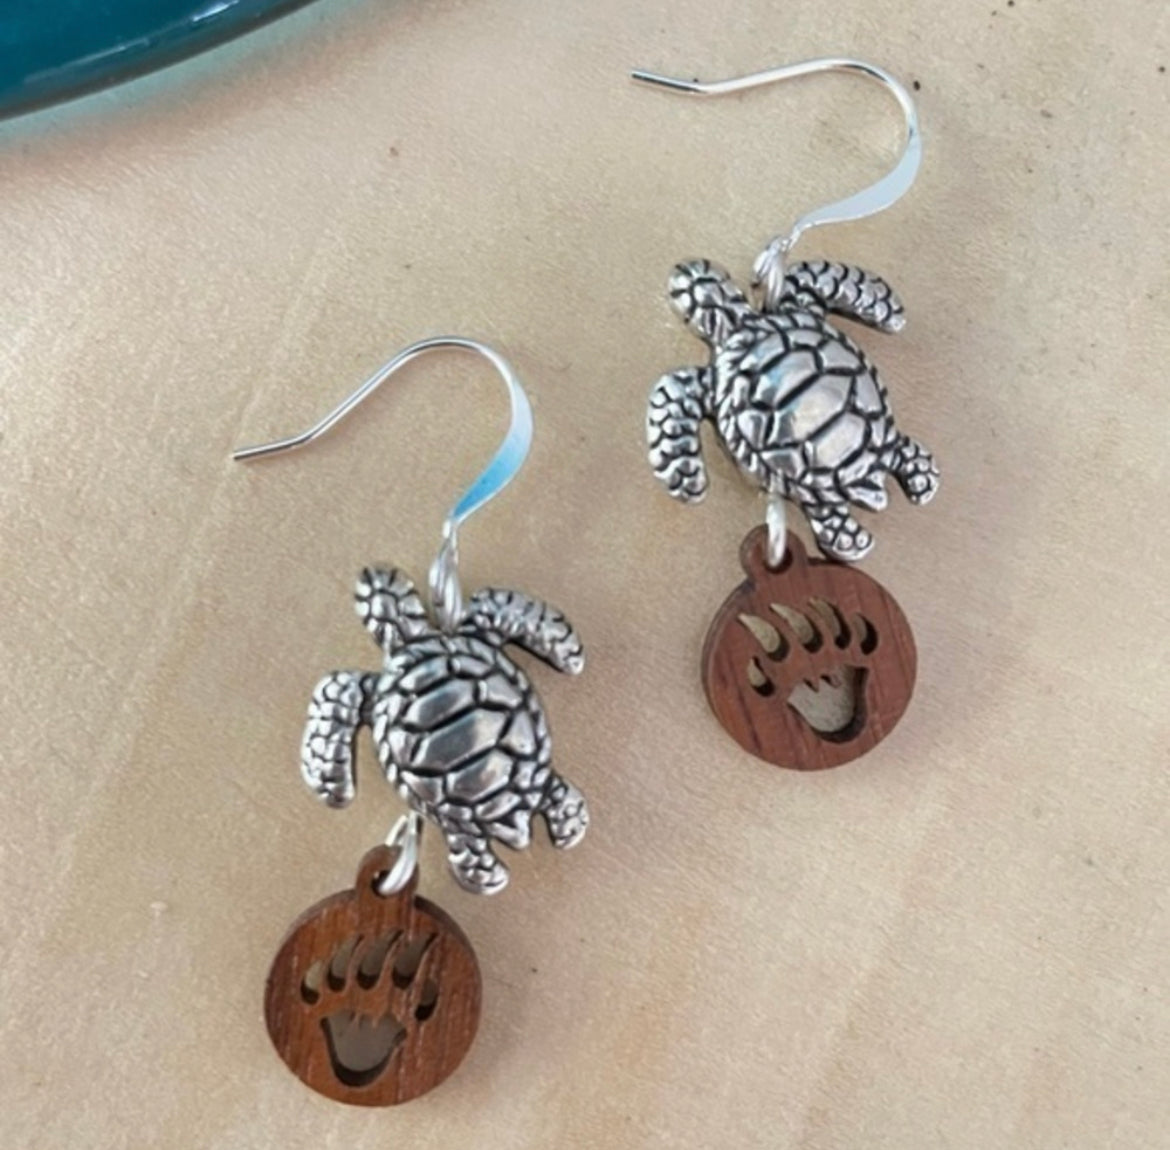 Turtle & Bear Paw Print Earrings 1.5" Mixed Metal Stamped Wood Ocean Western